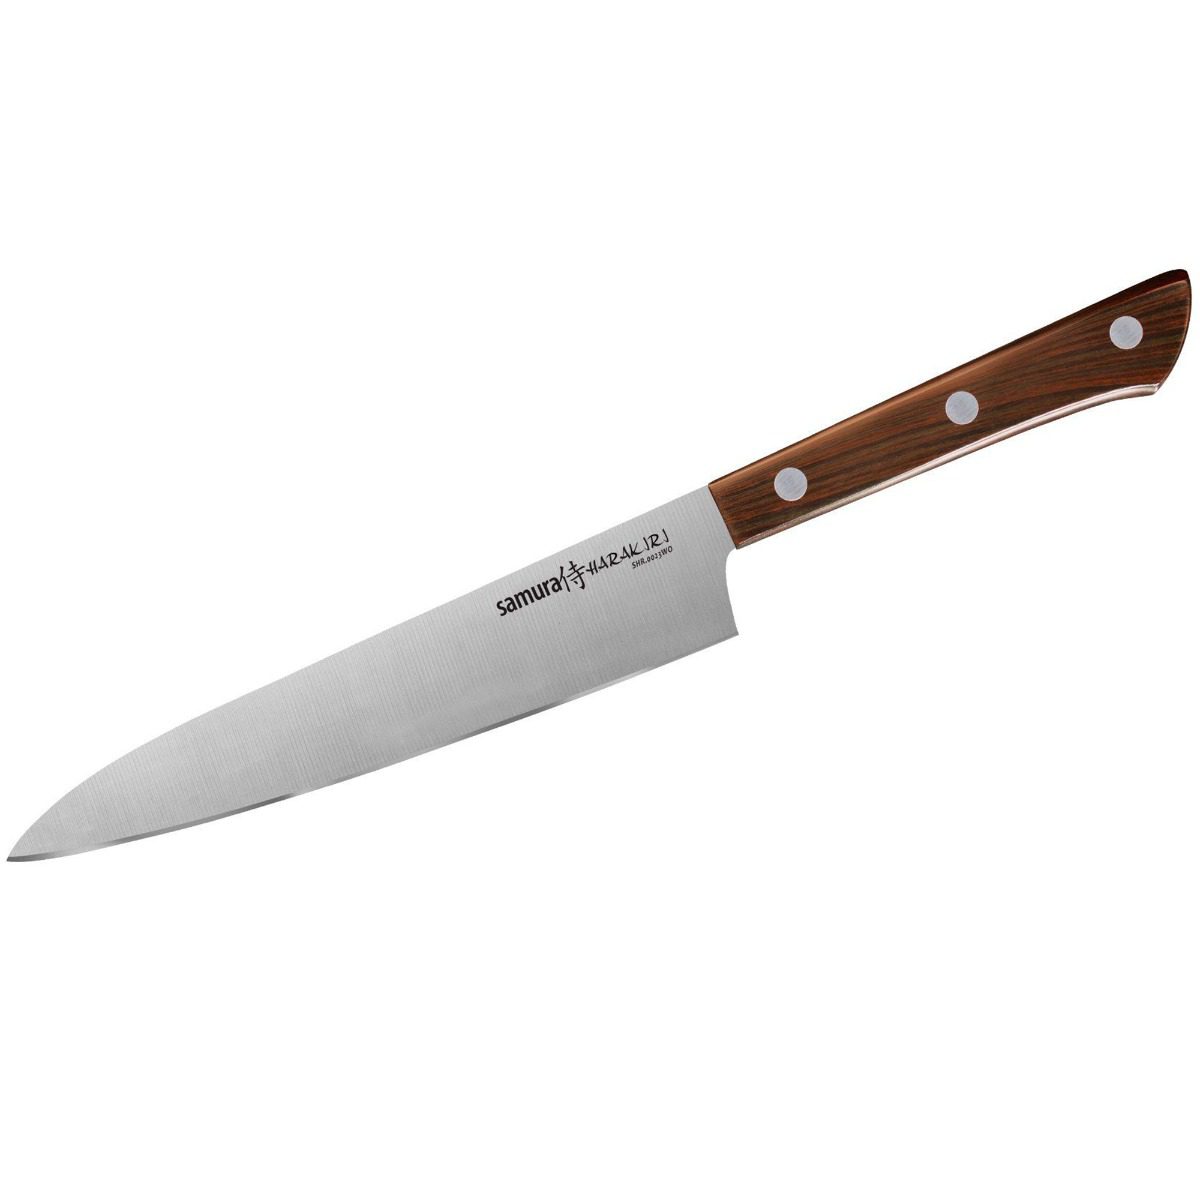 Μαχαίρι γενικής χρήσης 15cm (Wood)